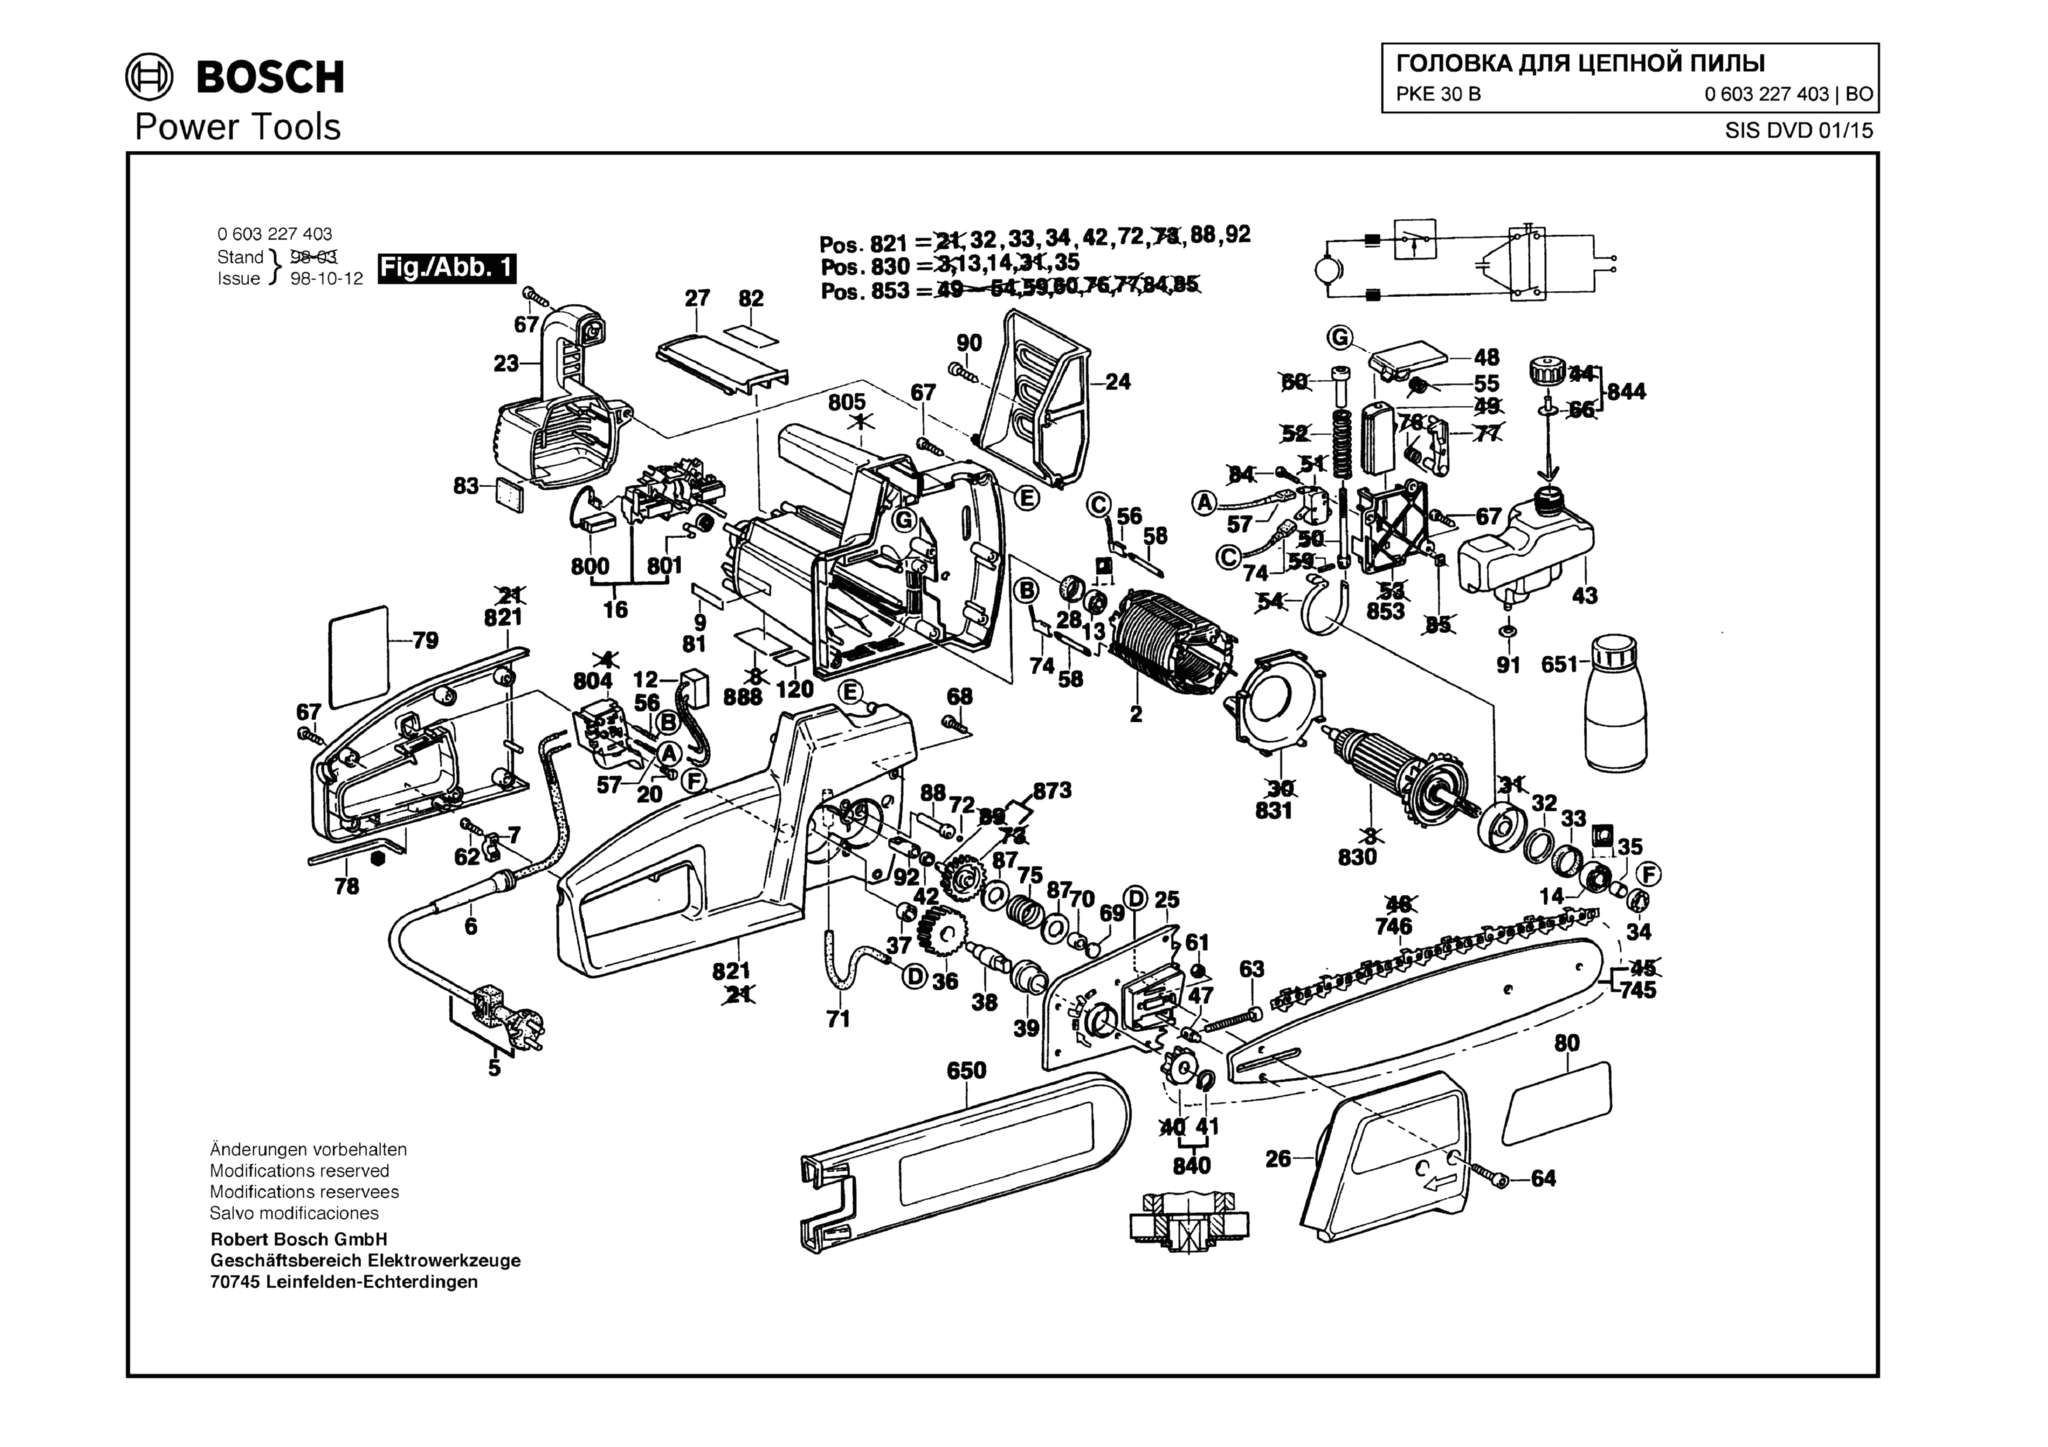 Запчасти, схема и деталировка Bosch PKE 30 B (ТИП 0603227403)